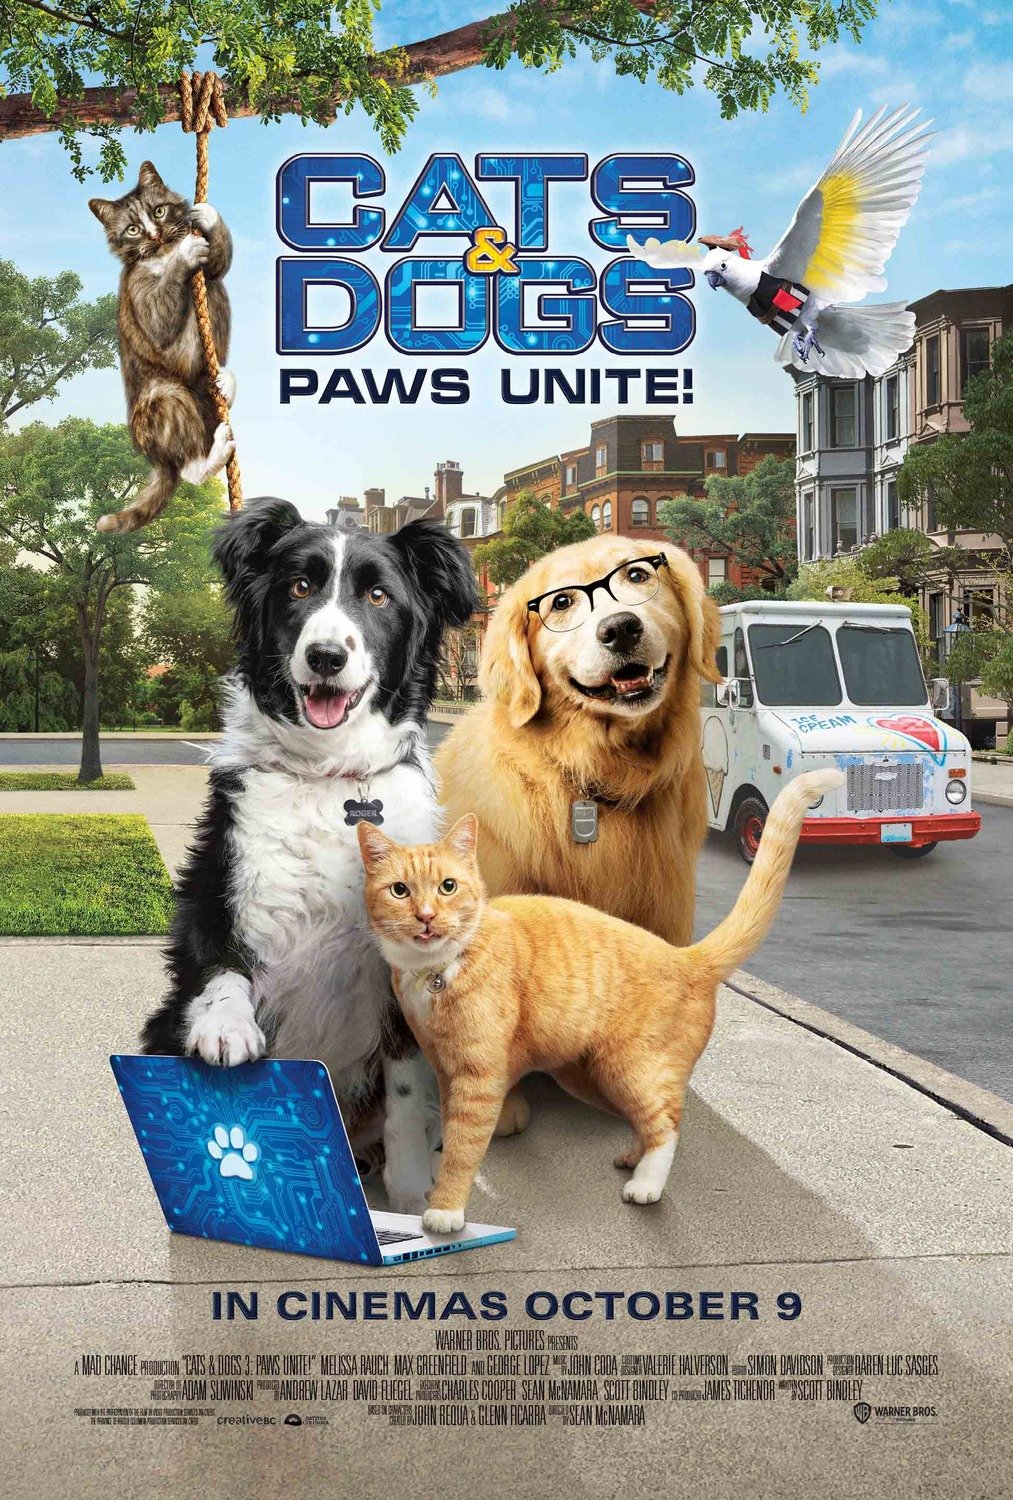 Cats Dogs 3 Paws Unite Filme 2020 Adorocinema